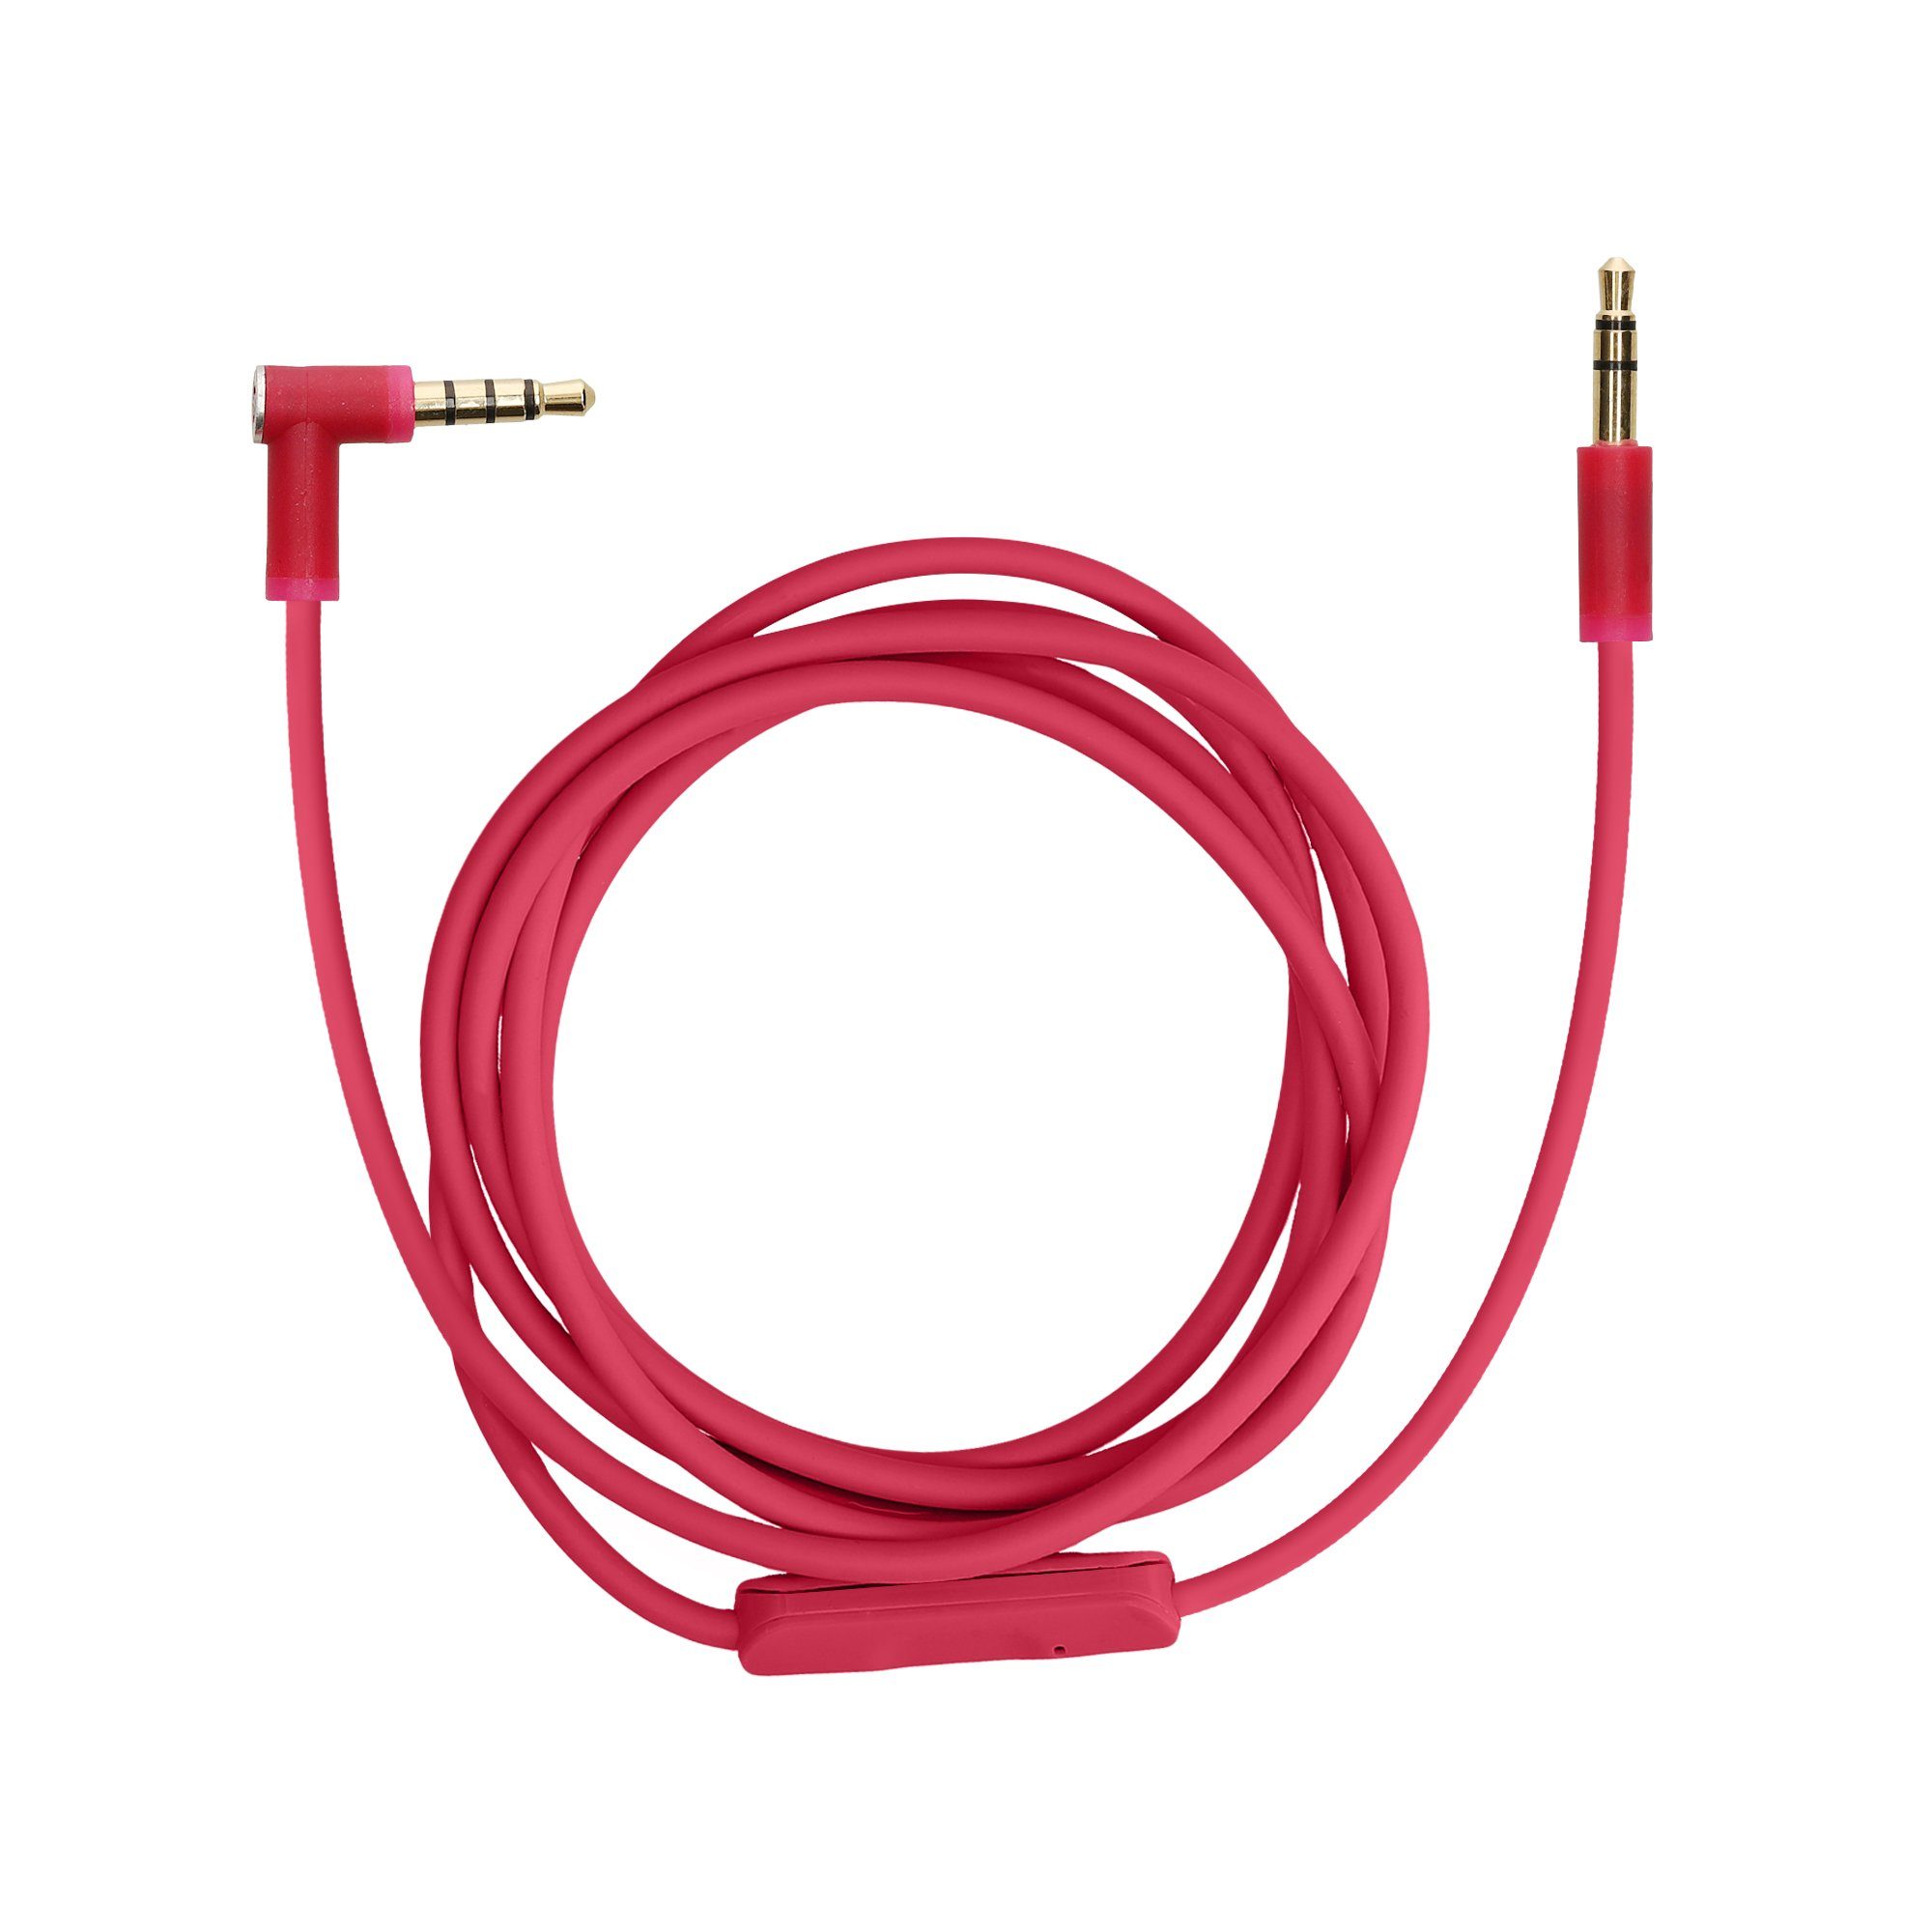 Kabel 7-polig für integrierte Elektronik